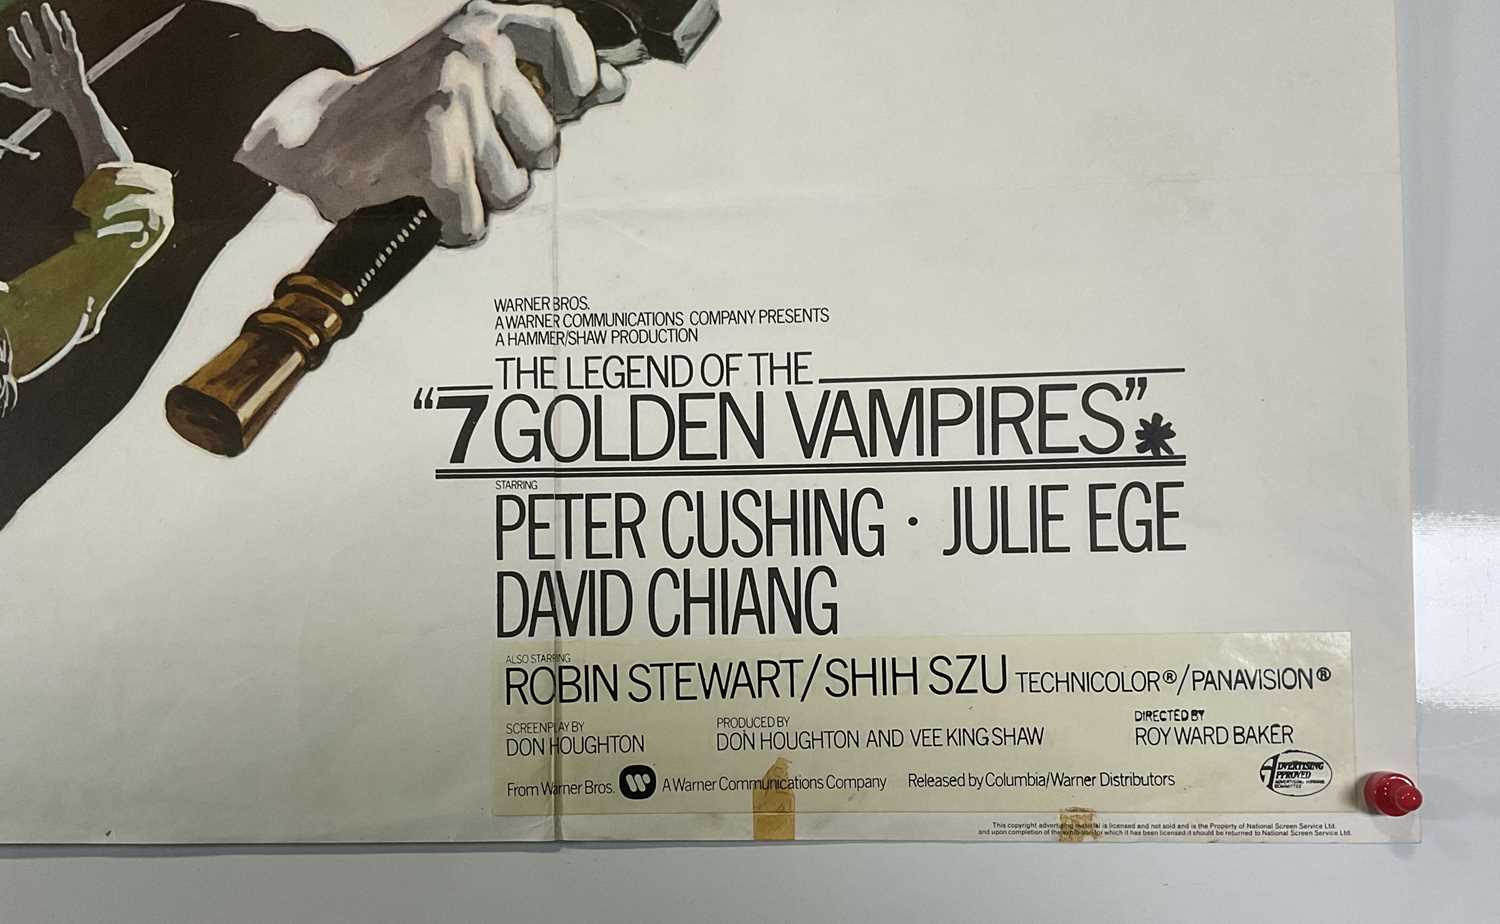 LEGEND OF THE 7 GOLDEN VAMPIRES (1974) UK Quad film poster, Hammer Horror starring Peter Cushing, - Image 3 of 6